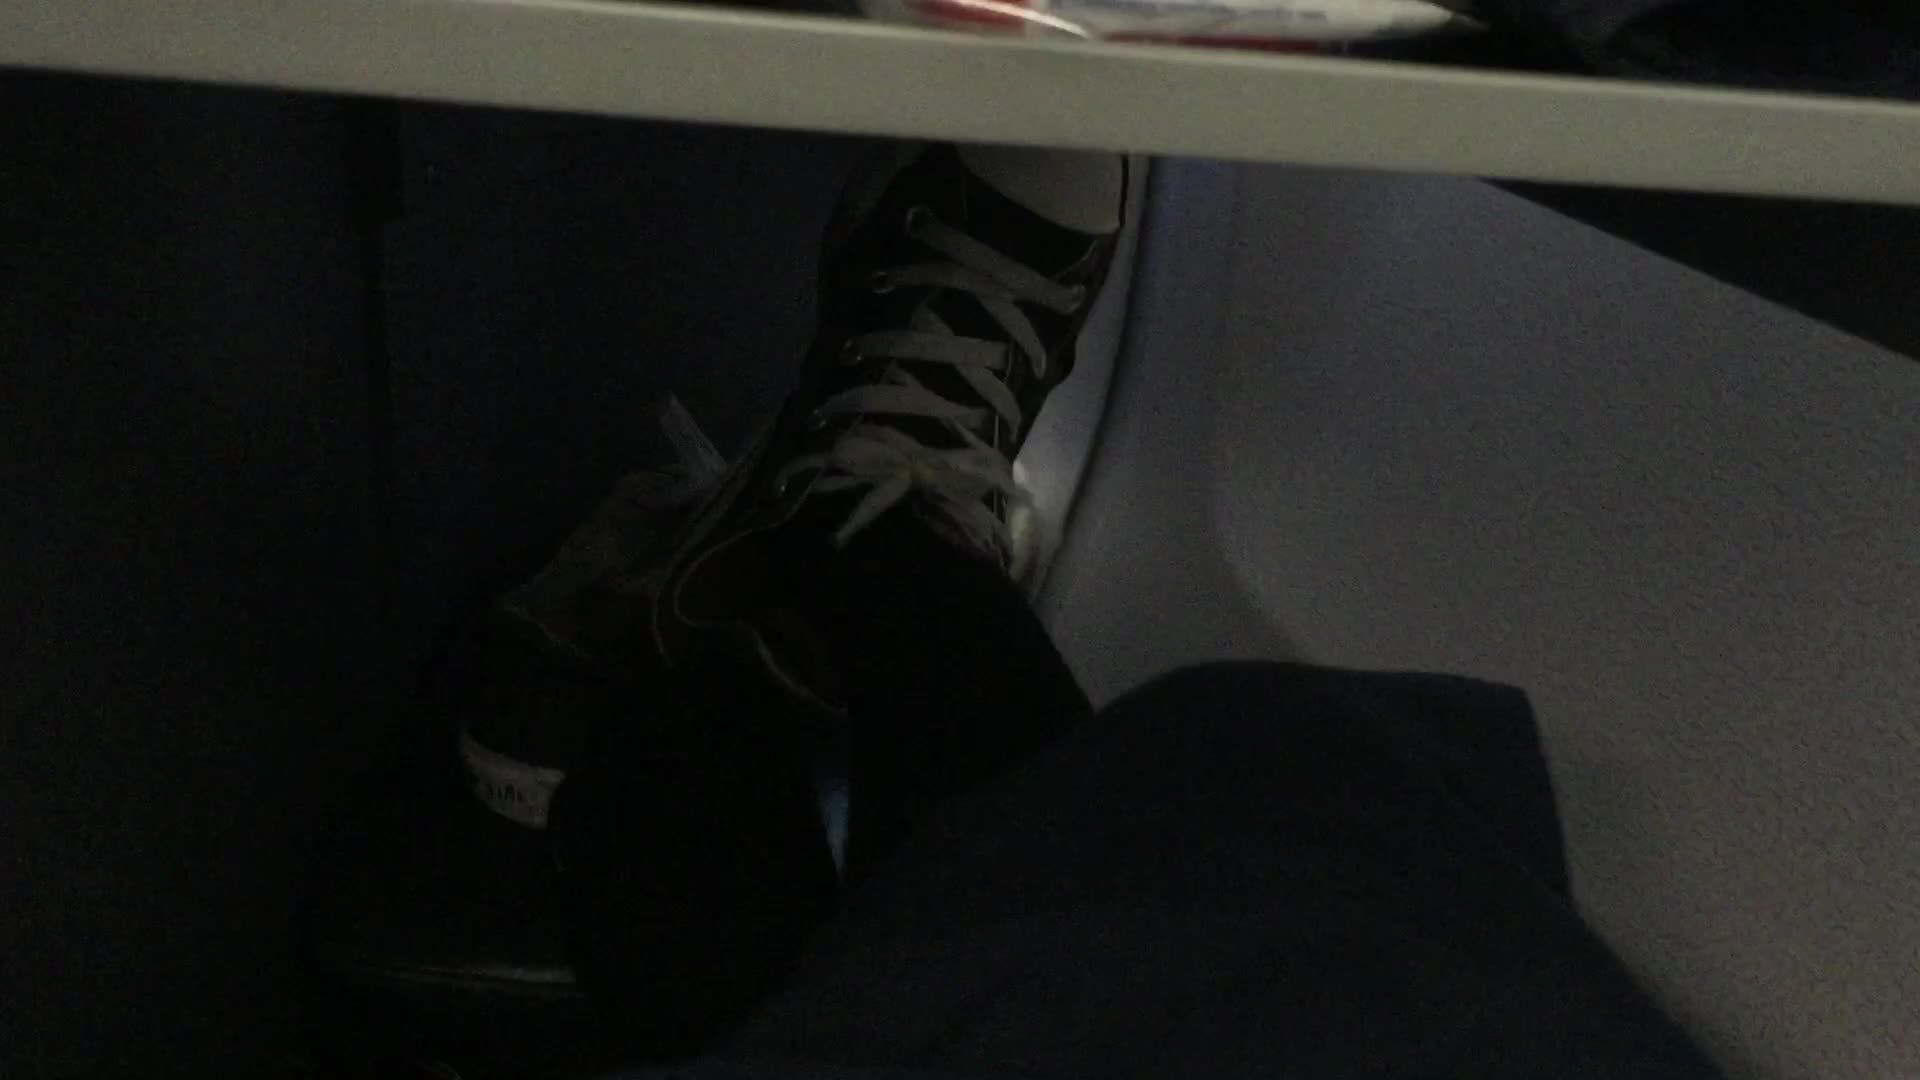 Airplane: Feet